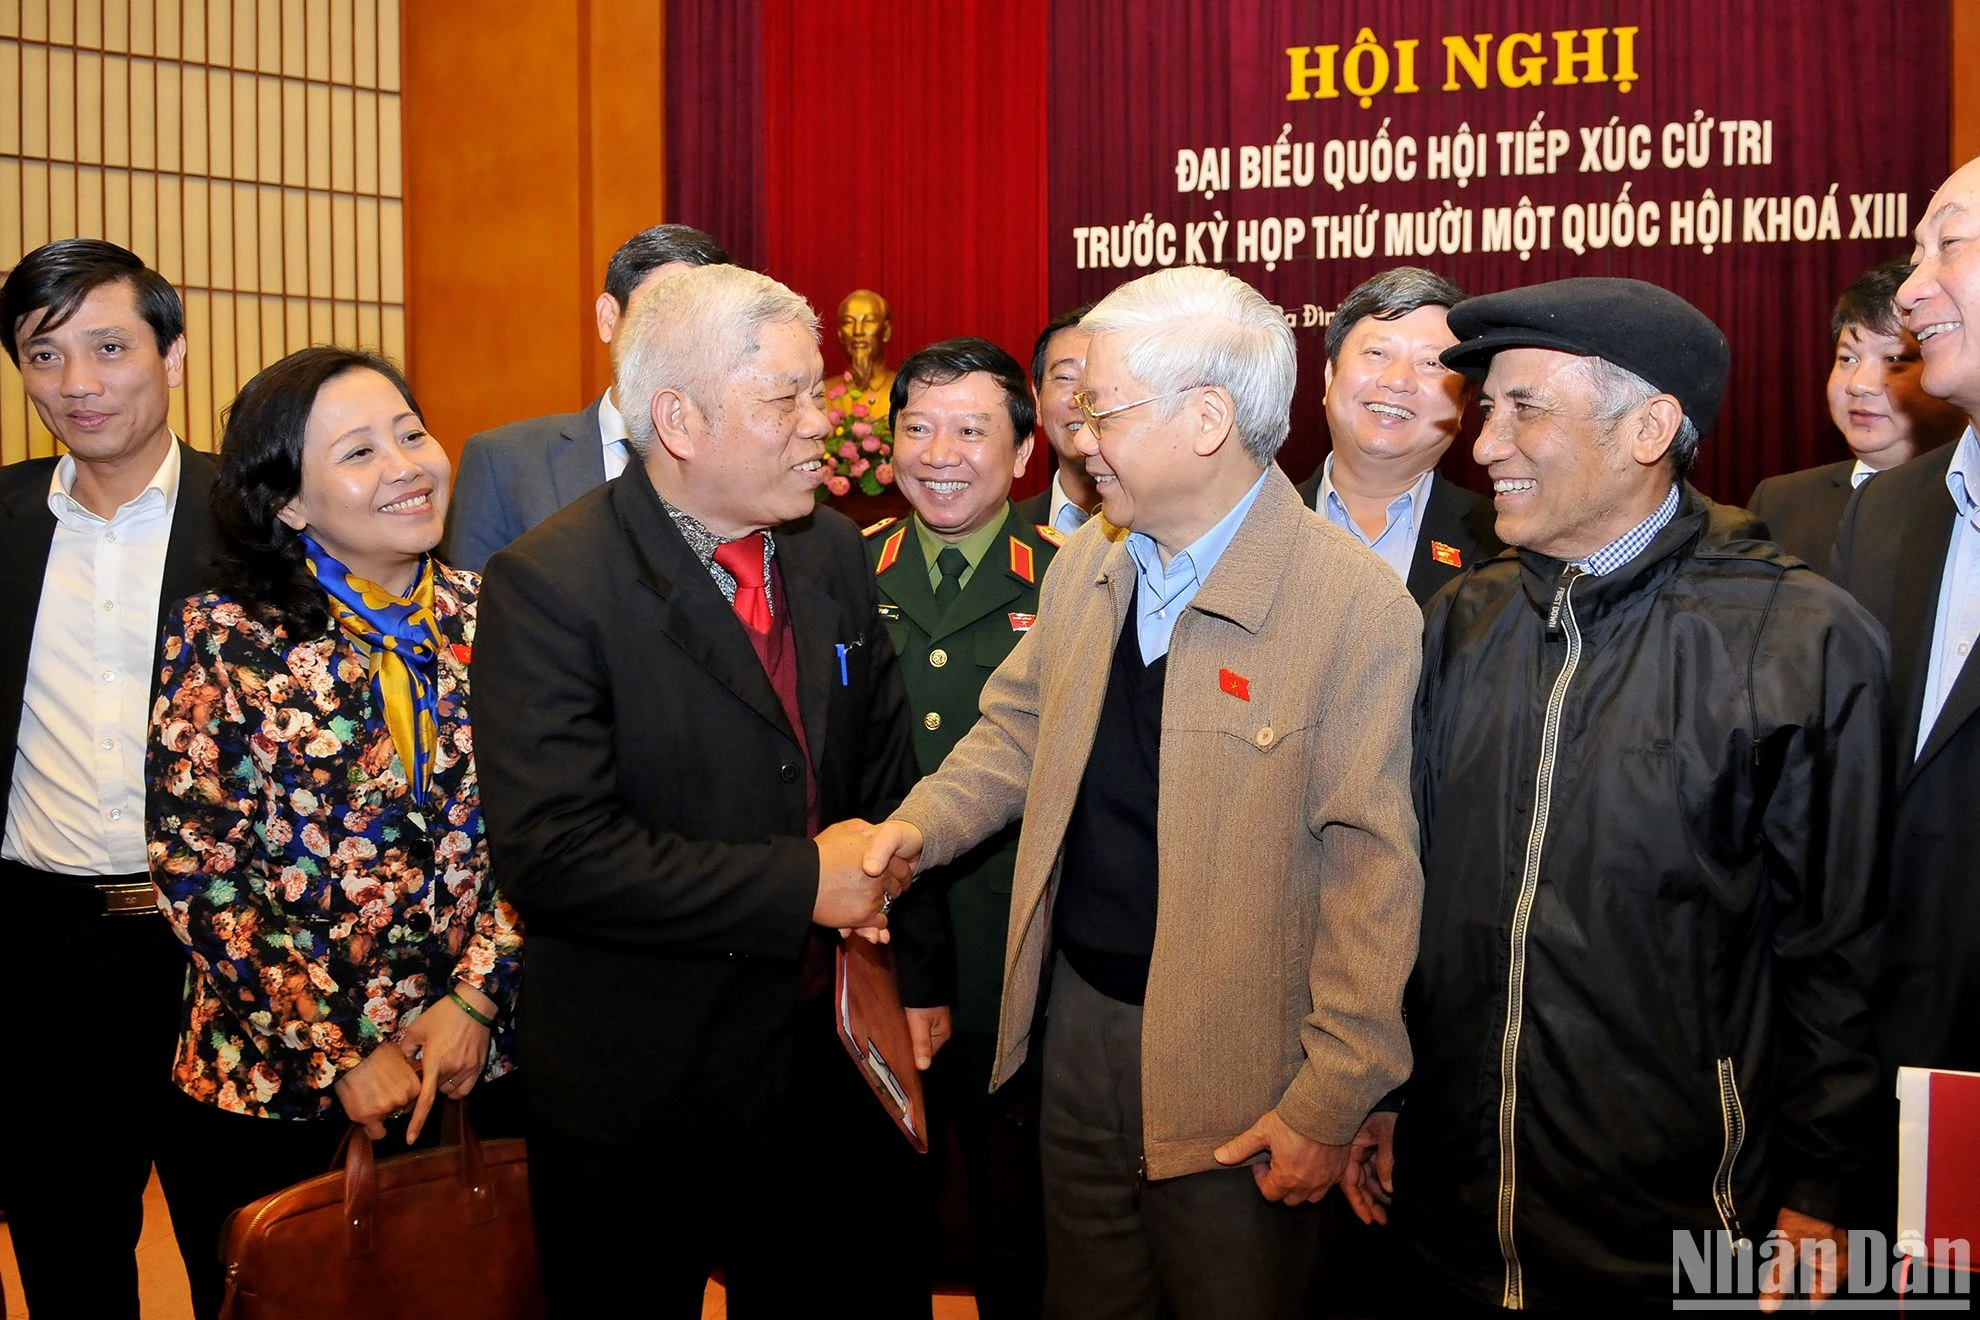 [Ảnh] Tổng Bí thư Nguyễn Phú Trọng - một phong cách mẫu mực của đại biểu nhân dân ảnh 6